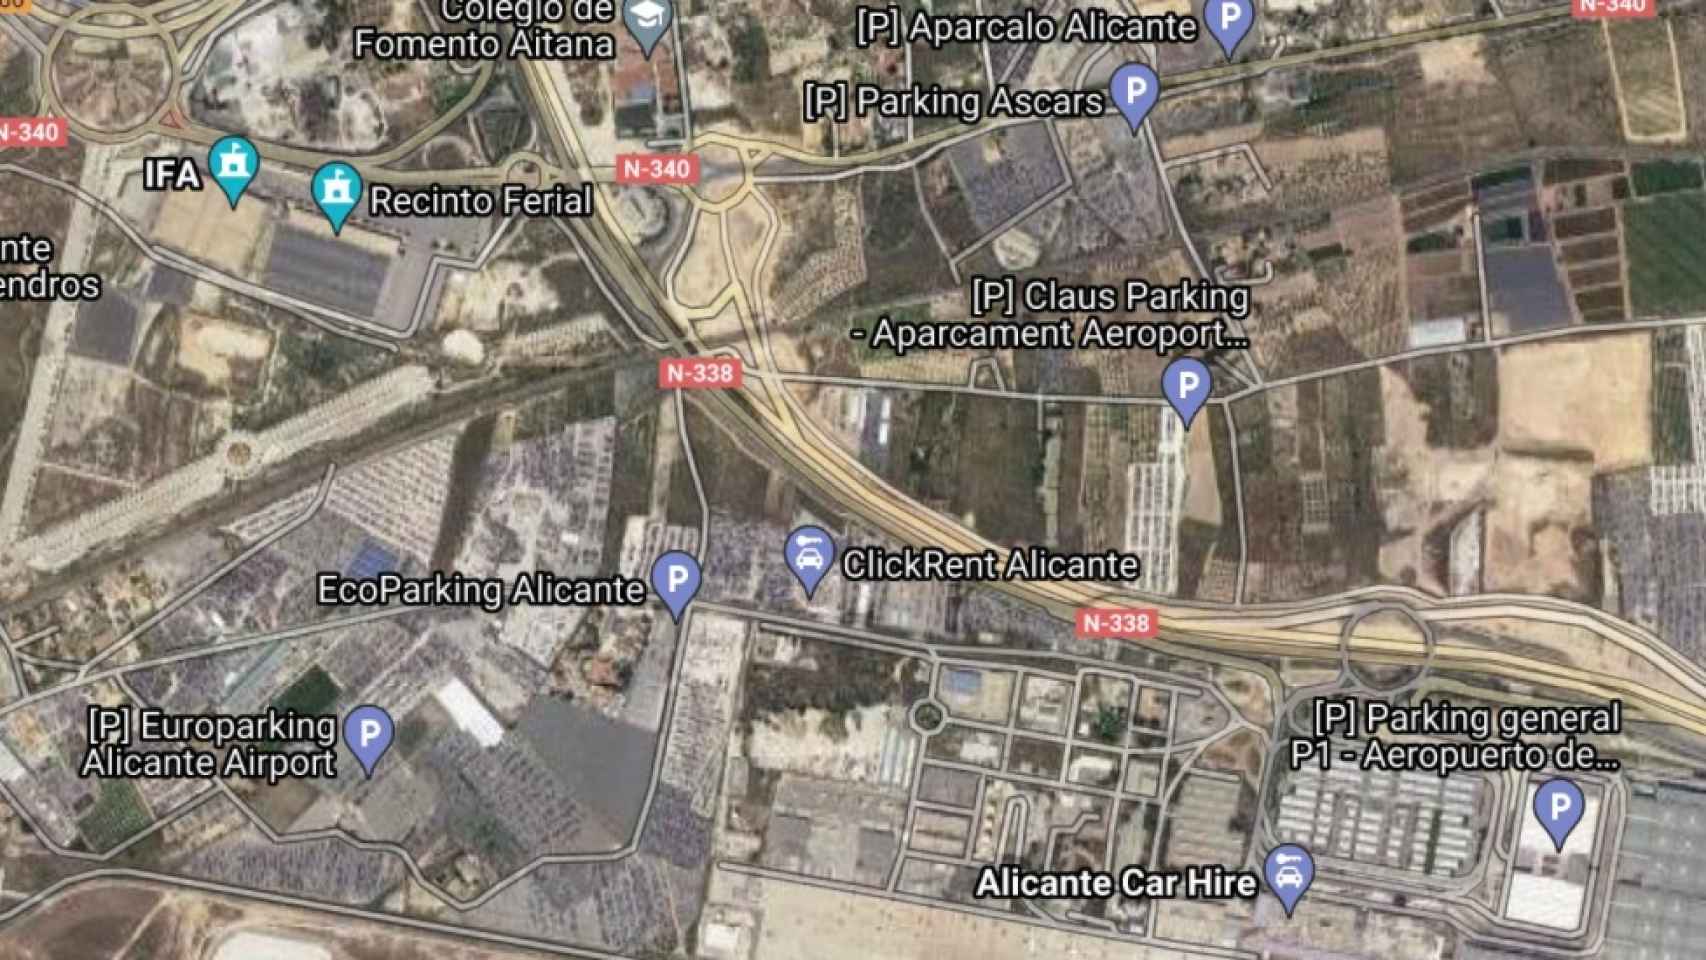 Vista aérea del aeropuerto en Google Maps, rodeado de aparcamientos.